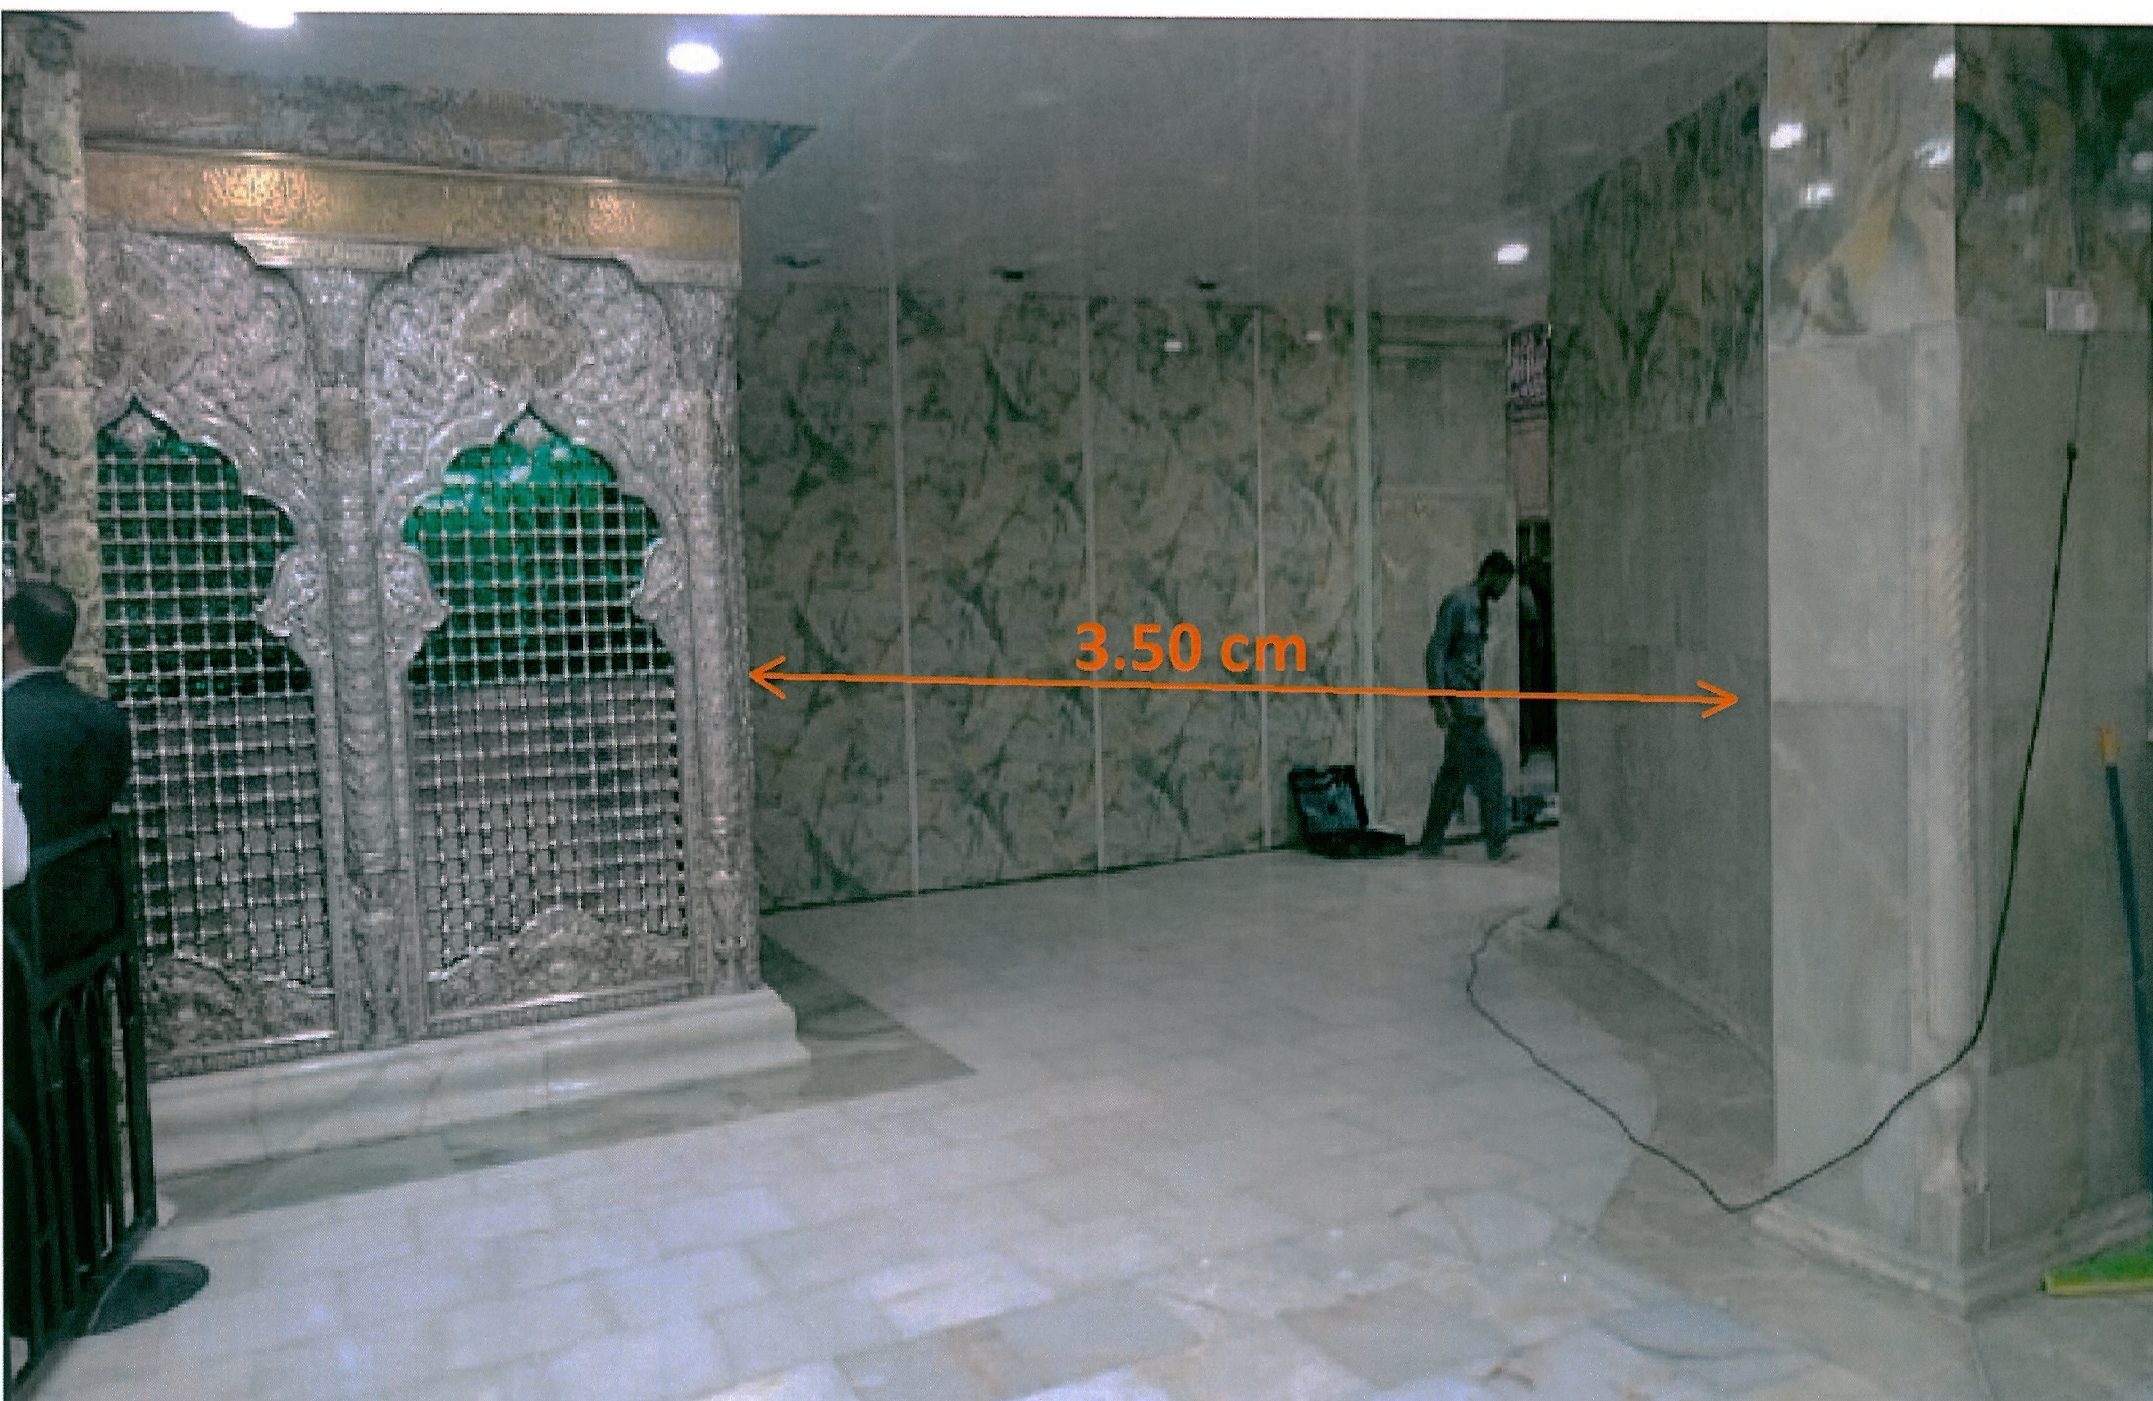 تقلیل حجم ستون های اطراف مضجع مطهر و ترفیع گنبد حرم مطهر سید الشهداء(علیه السلام) با عنوان پروژه معراج